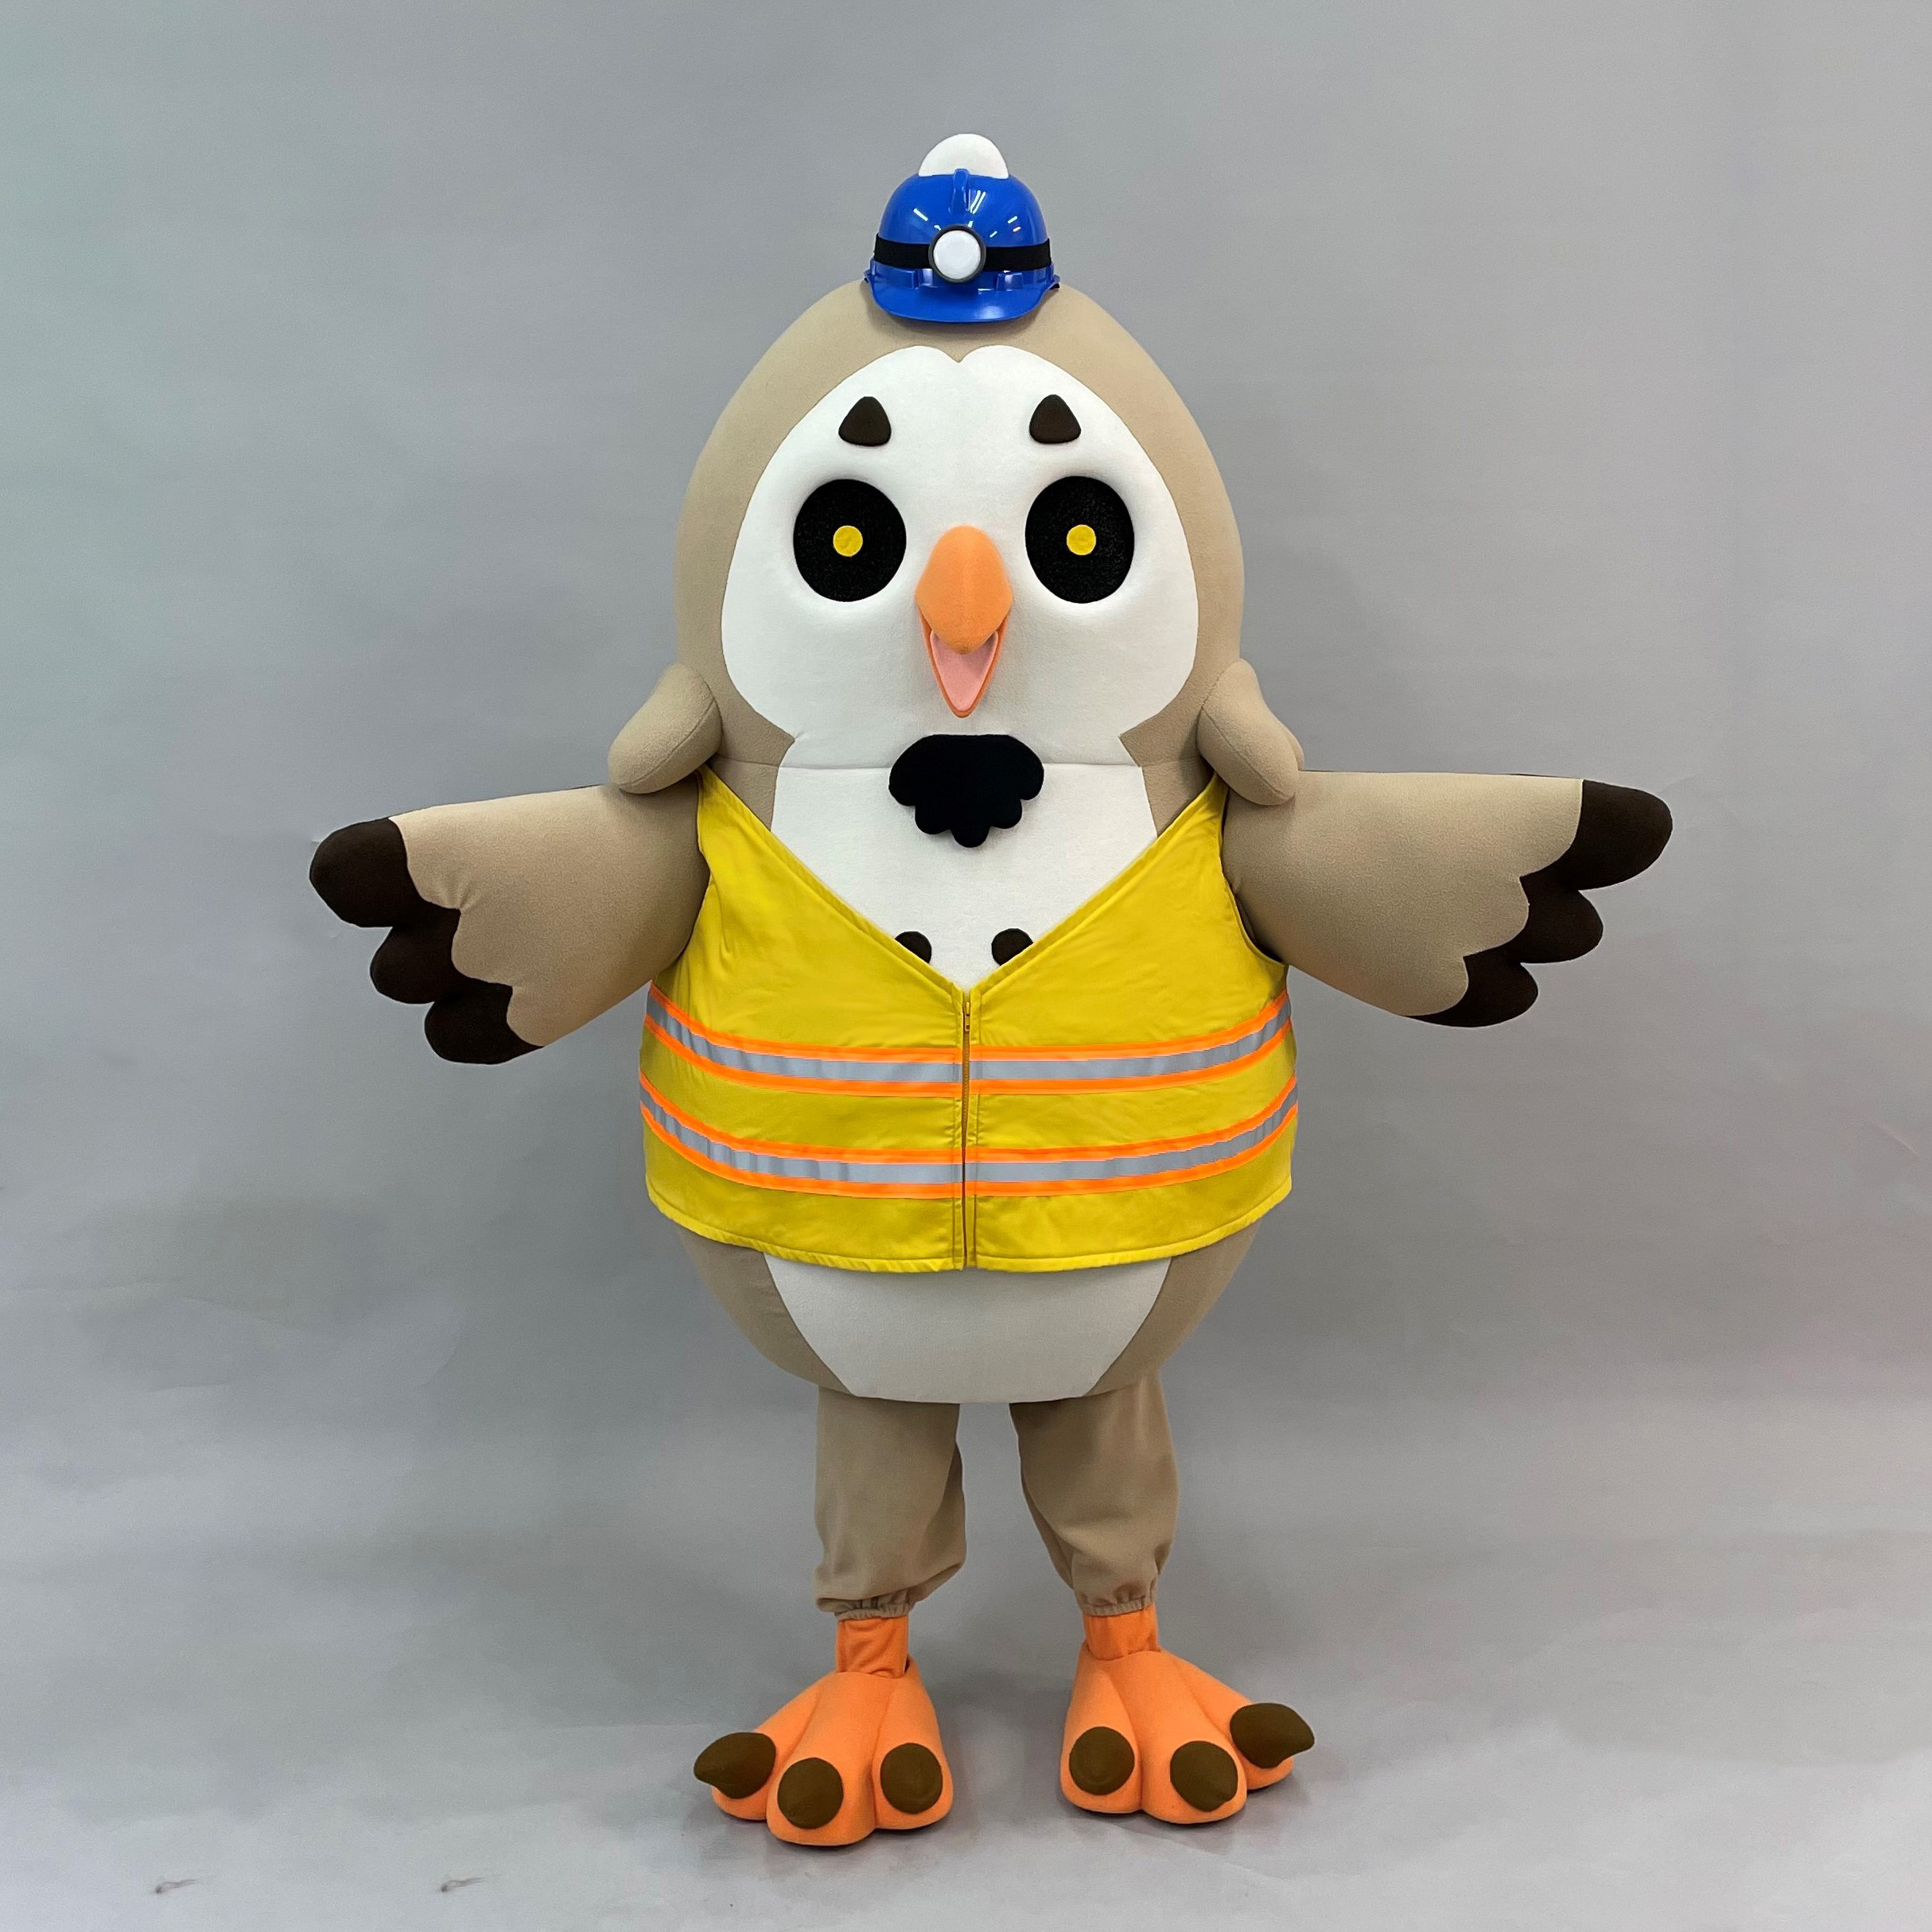 魔人社2021司法院吉祥物草鴞人偶製作 Grass owl costume